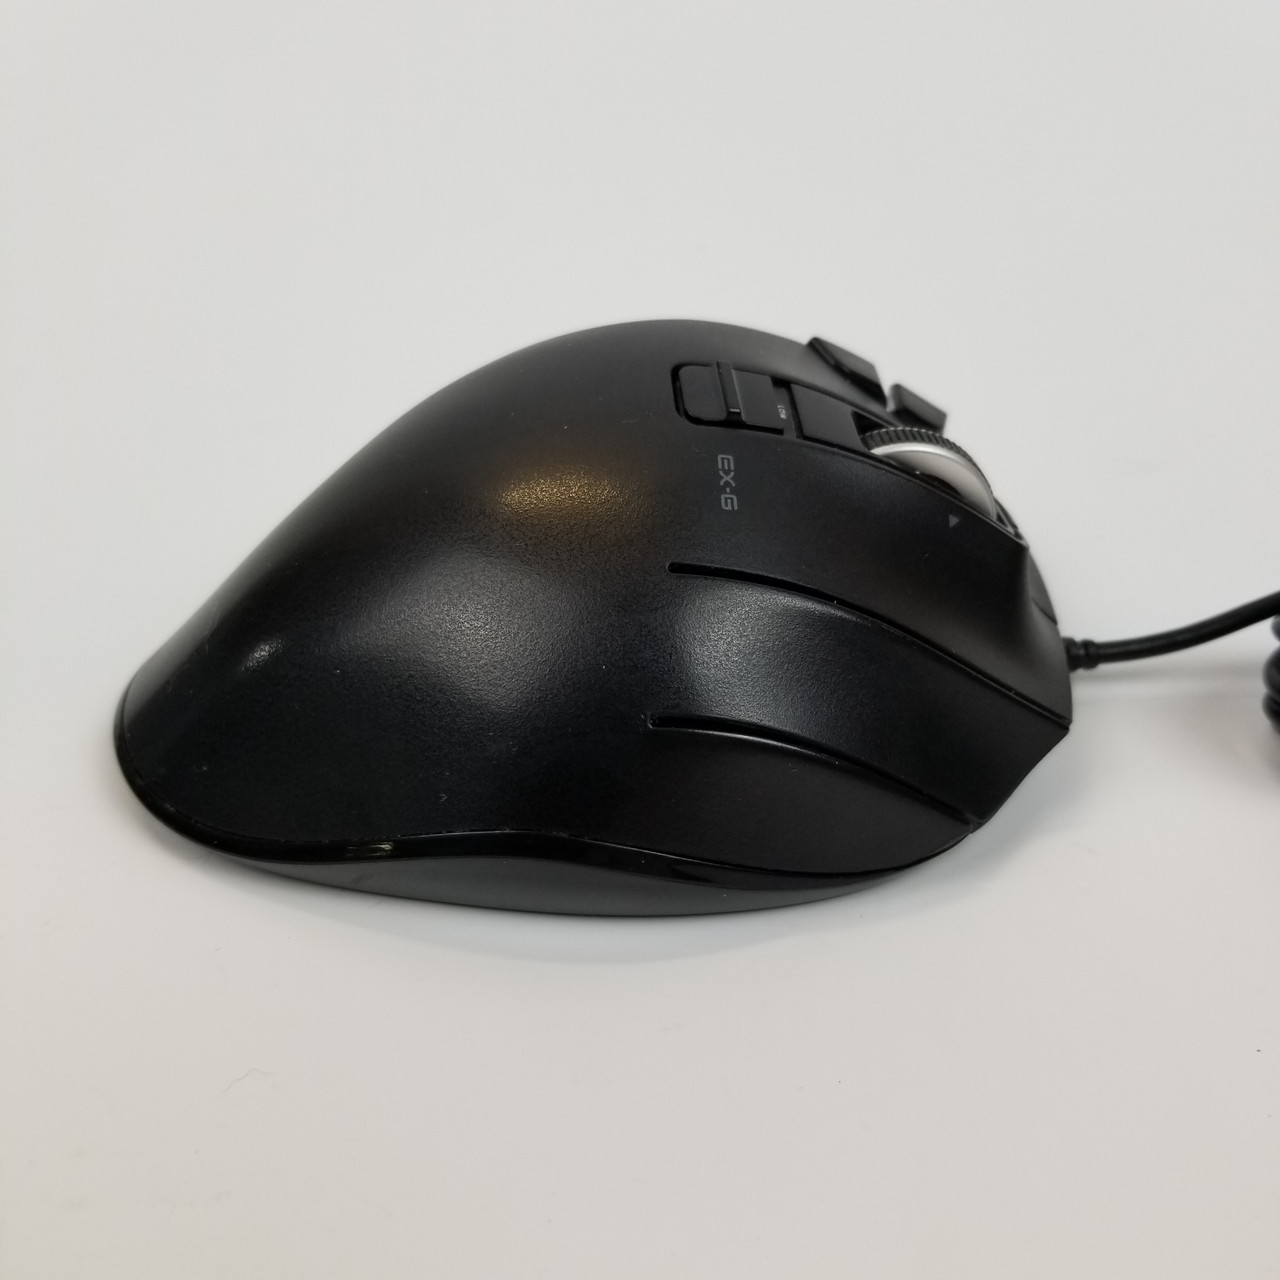 Elecom EX-G Trackball Mouse | Grade A